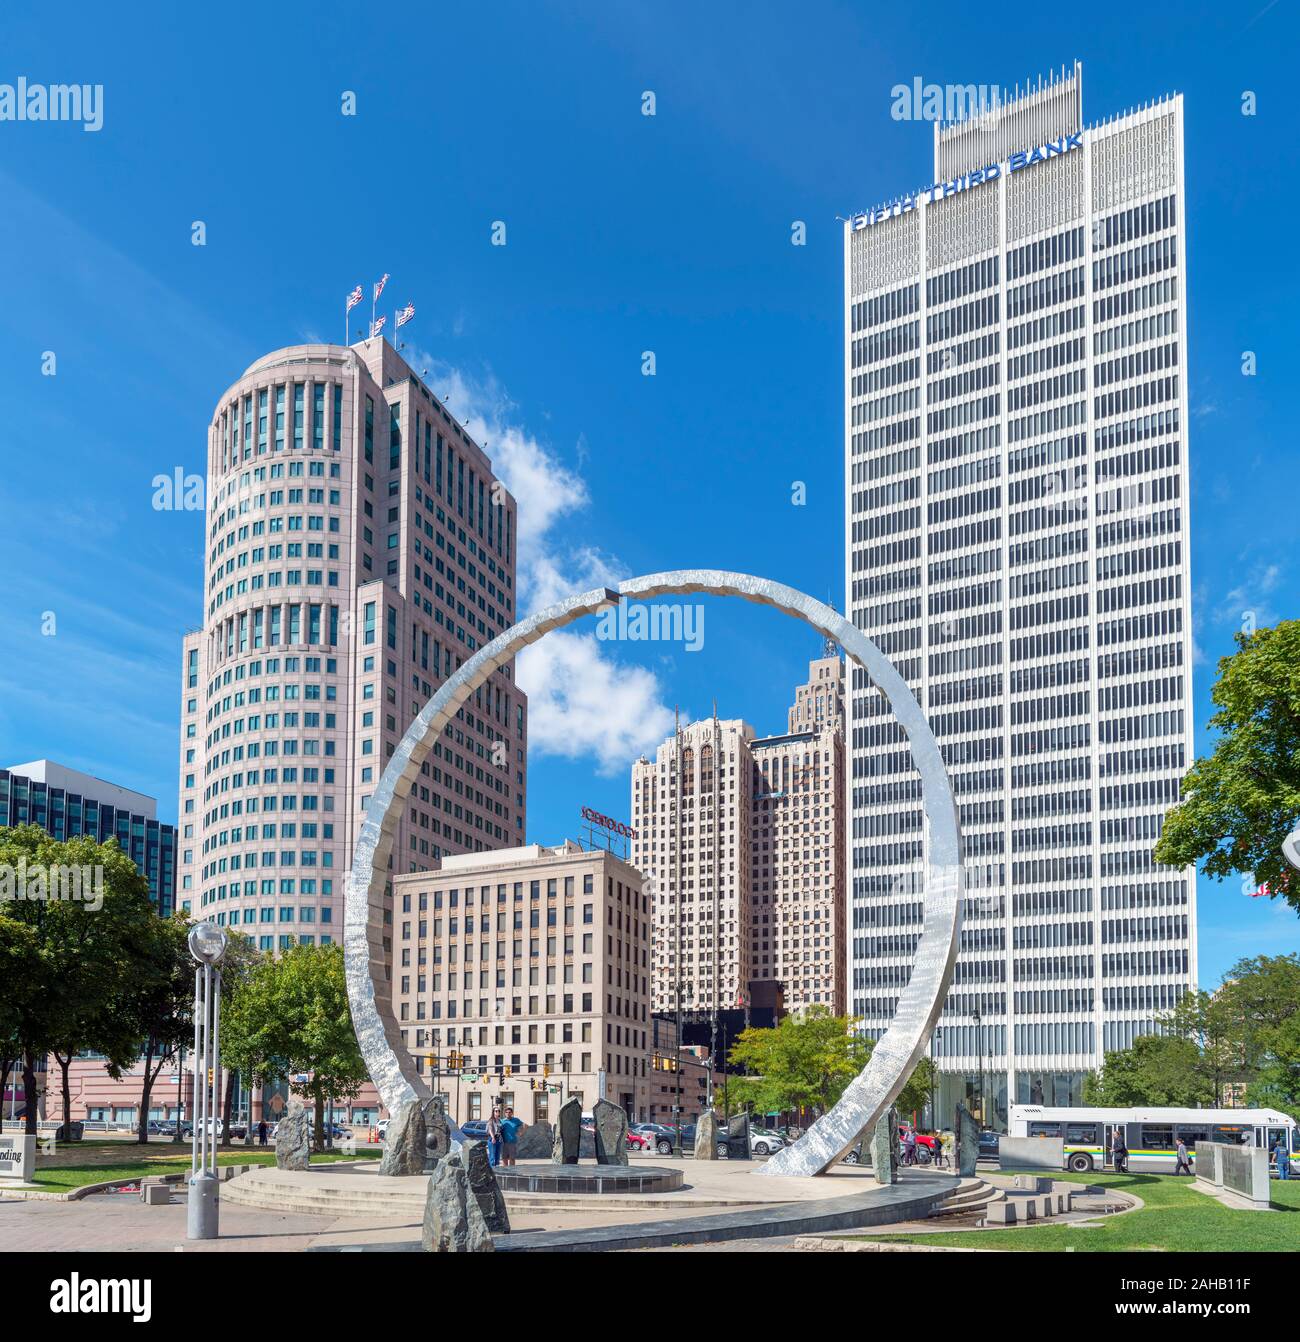 La ciudad de Hart Plaza, con el trascender la escultura en primer plano, Detroit, Michigan, EE.UU. Foto de stock